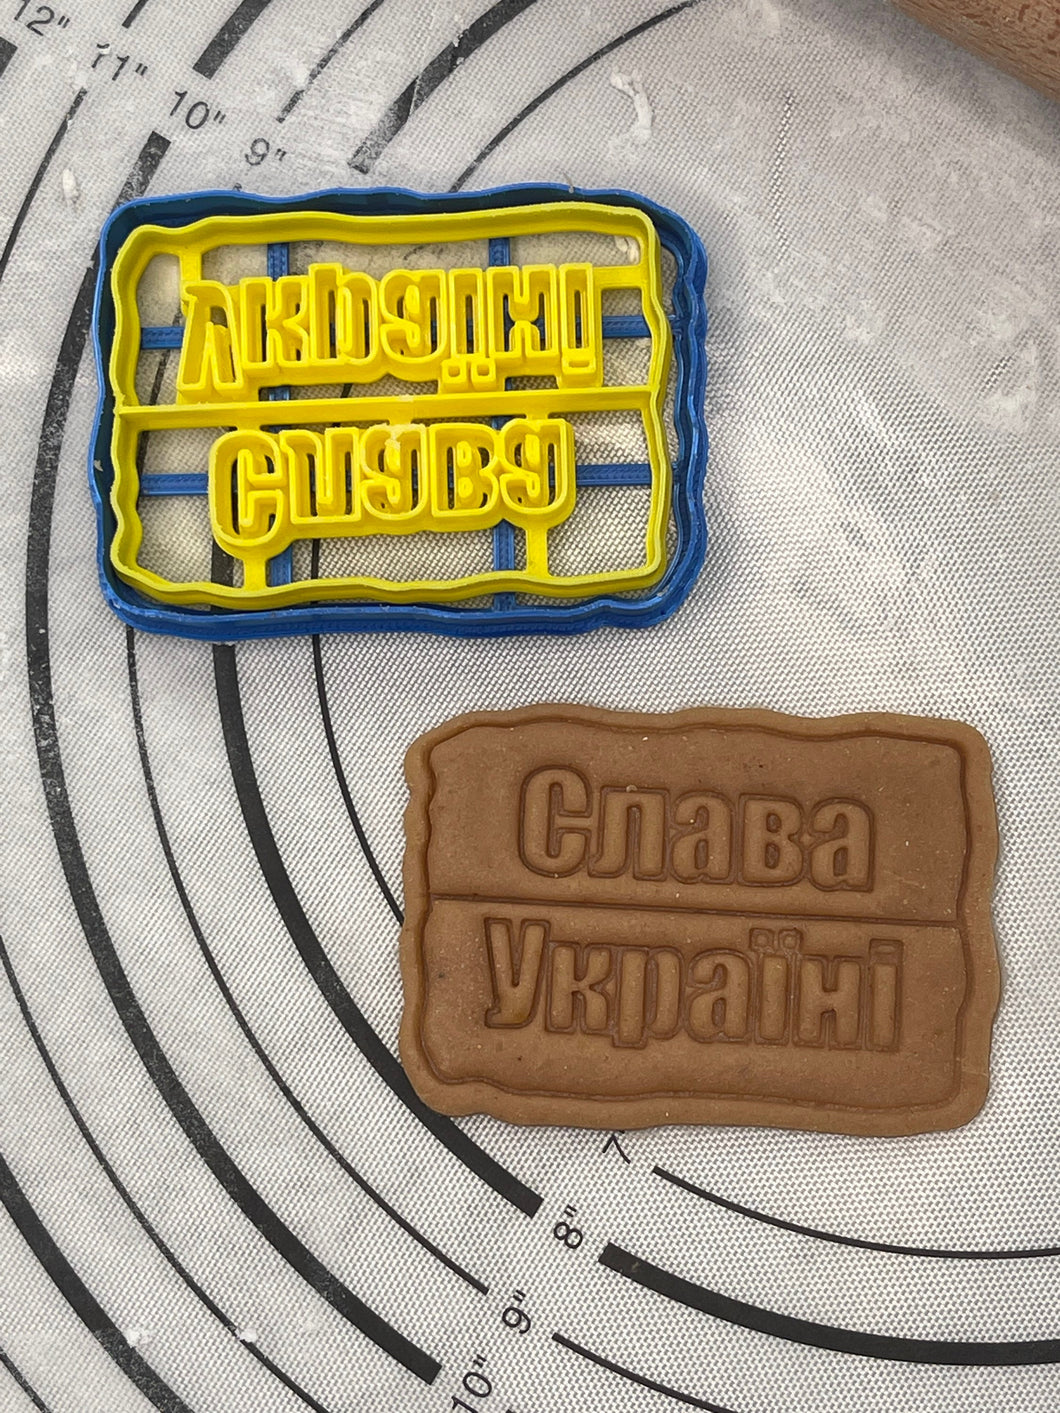 SUPPORT UKRAINE - Slava Ukraine Слава Україні Cookie Cutter & Mold 3.2-Inch-Scale Produced by 3D Kitchen Art